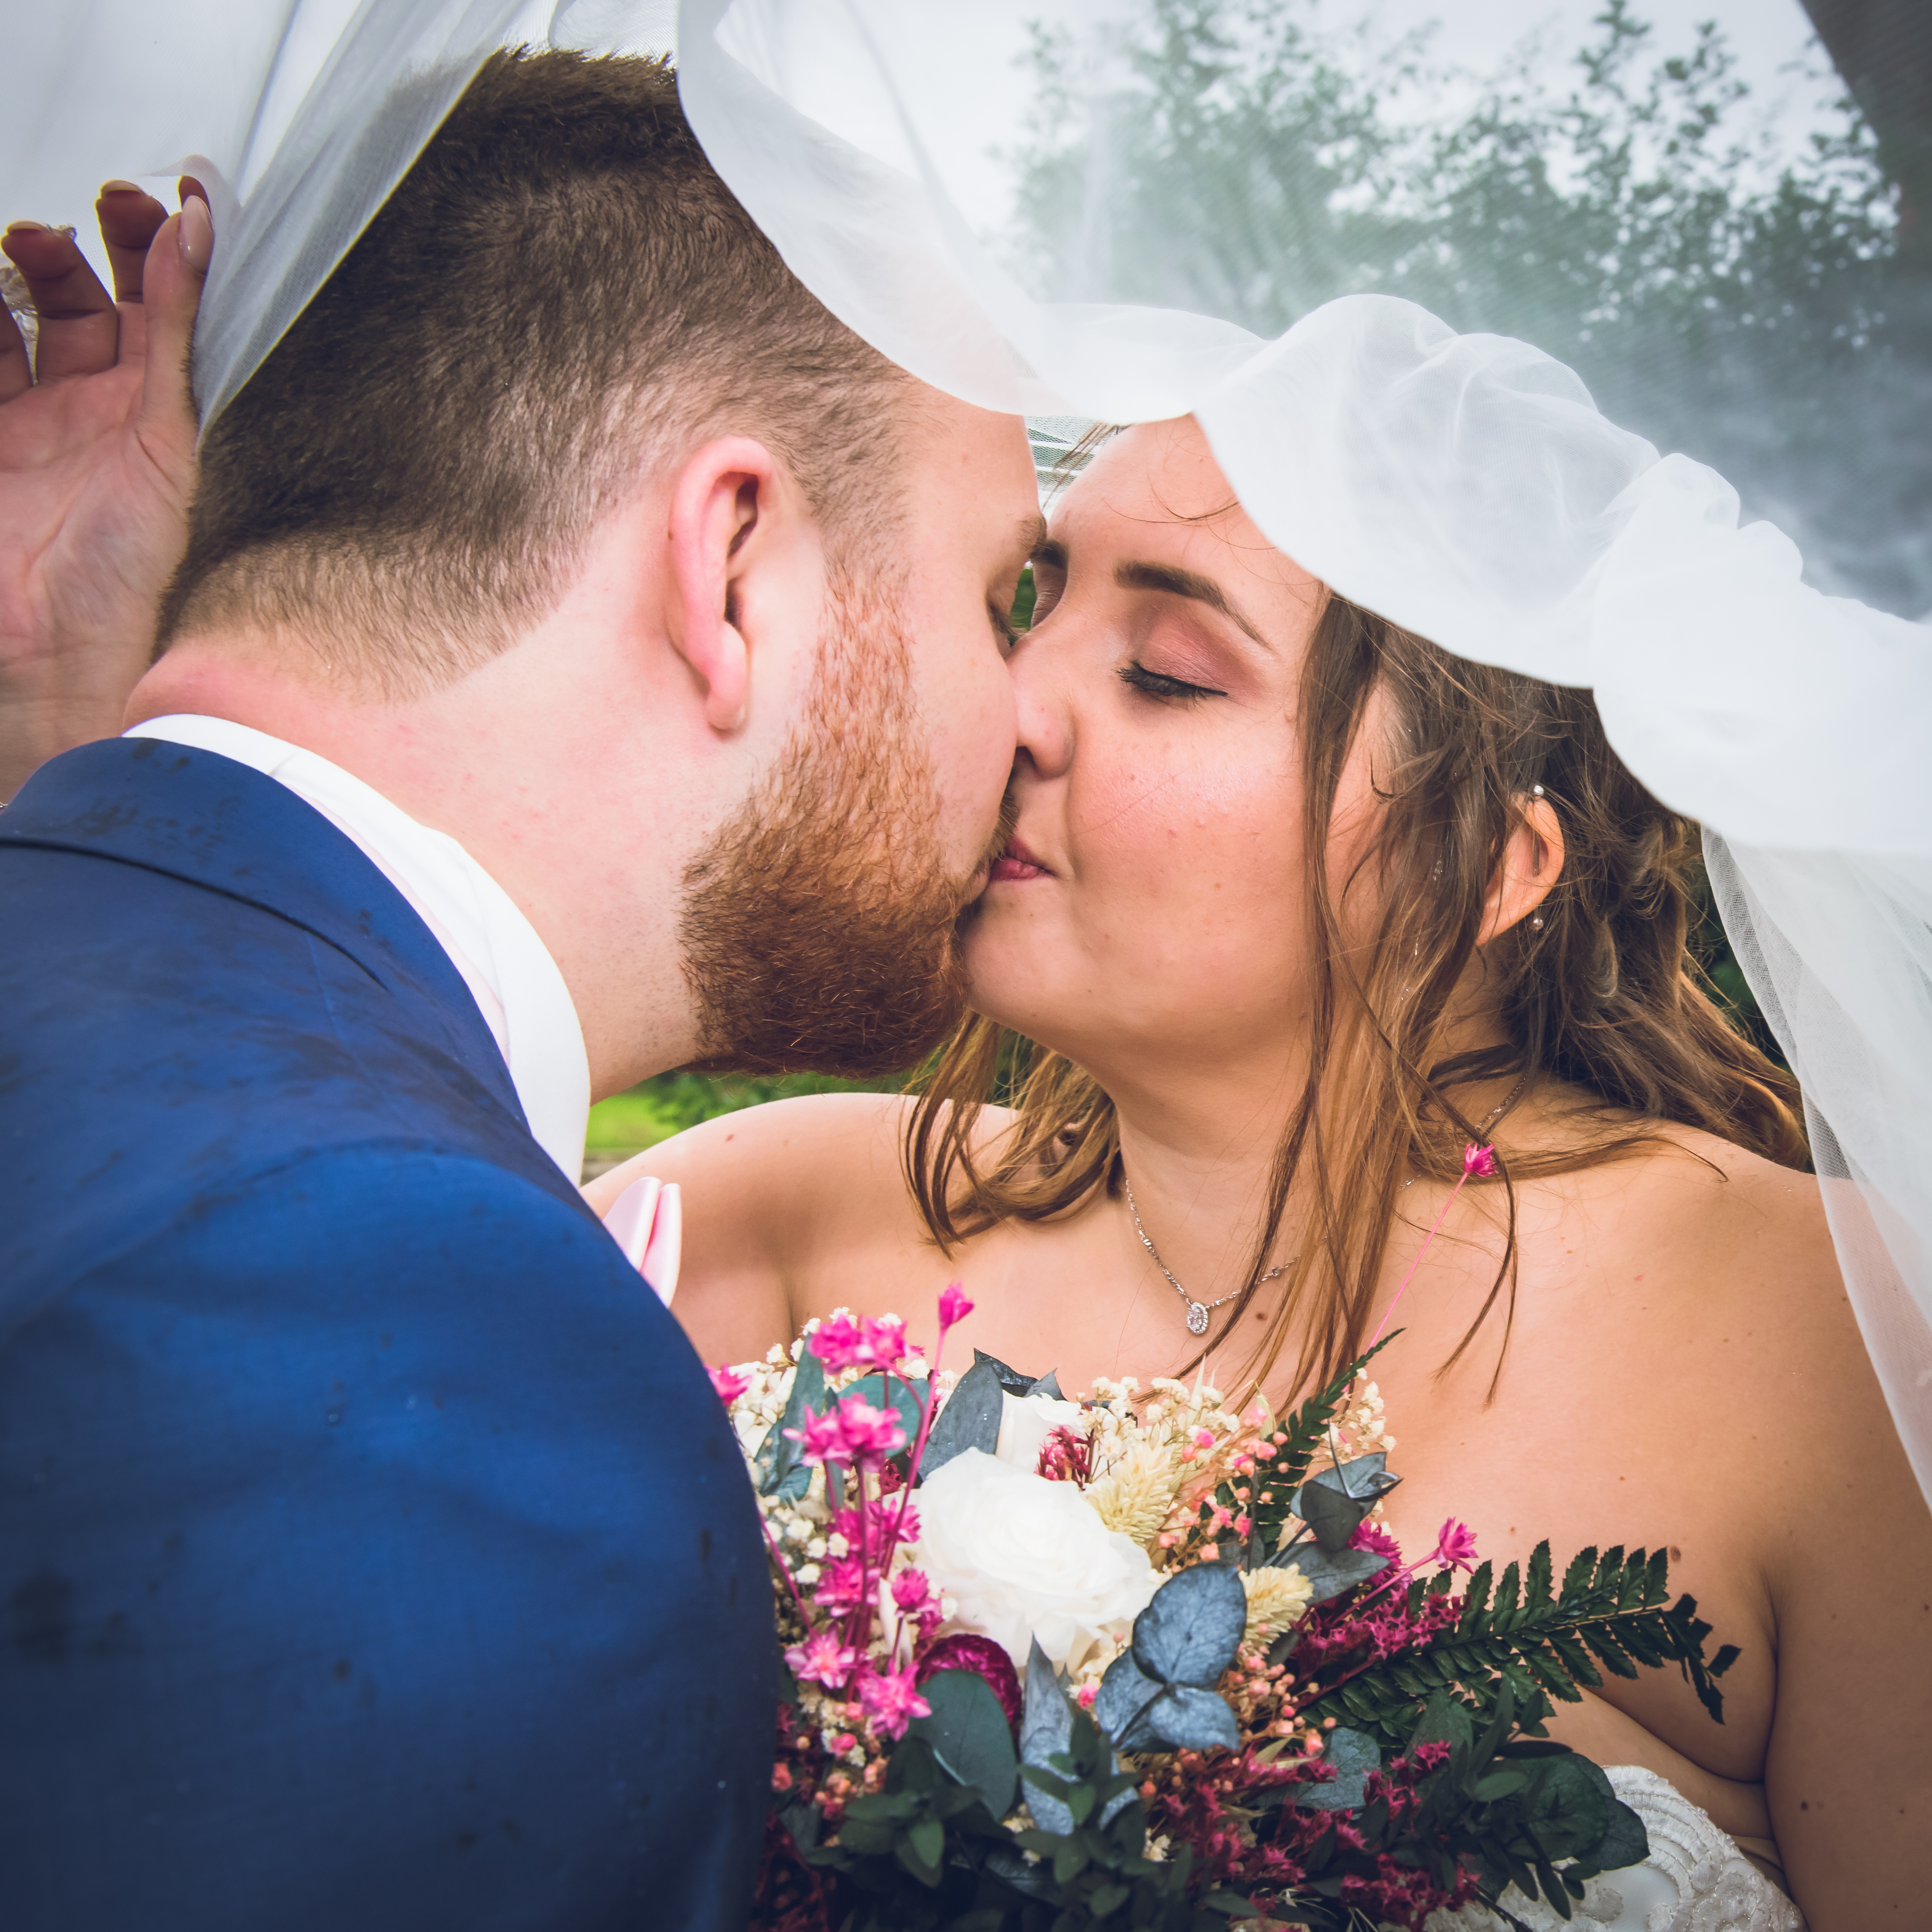 Mariage de Laurie et Valentin photo de couple sous la pluie, les mariés s'embrassent sous le voile blanc de la mariée